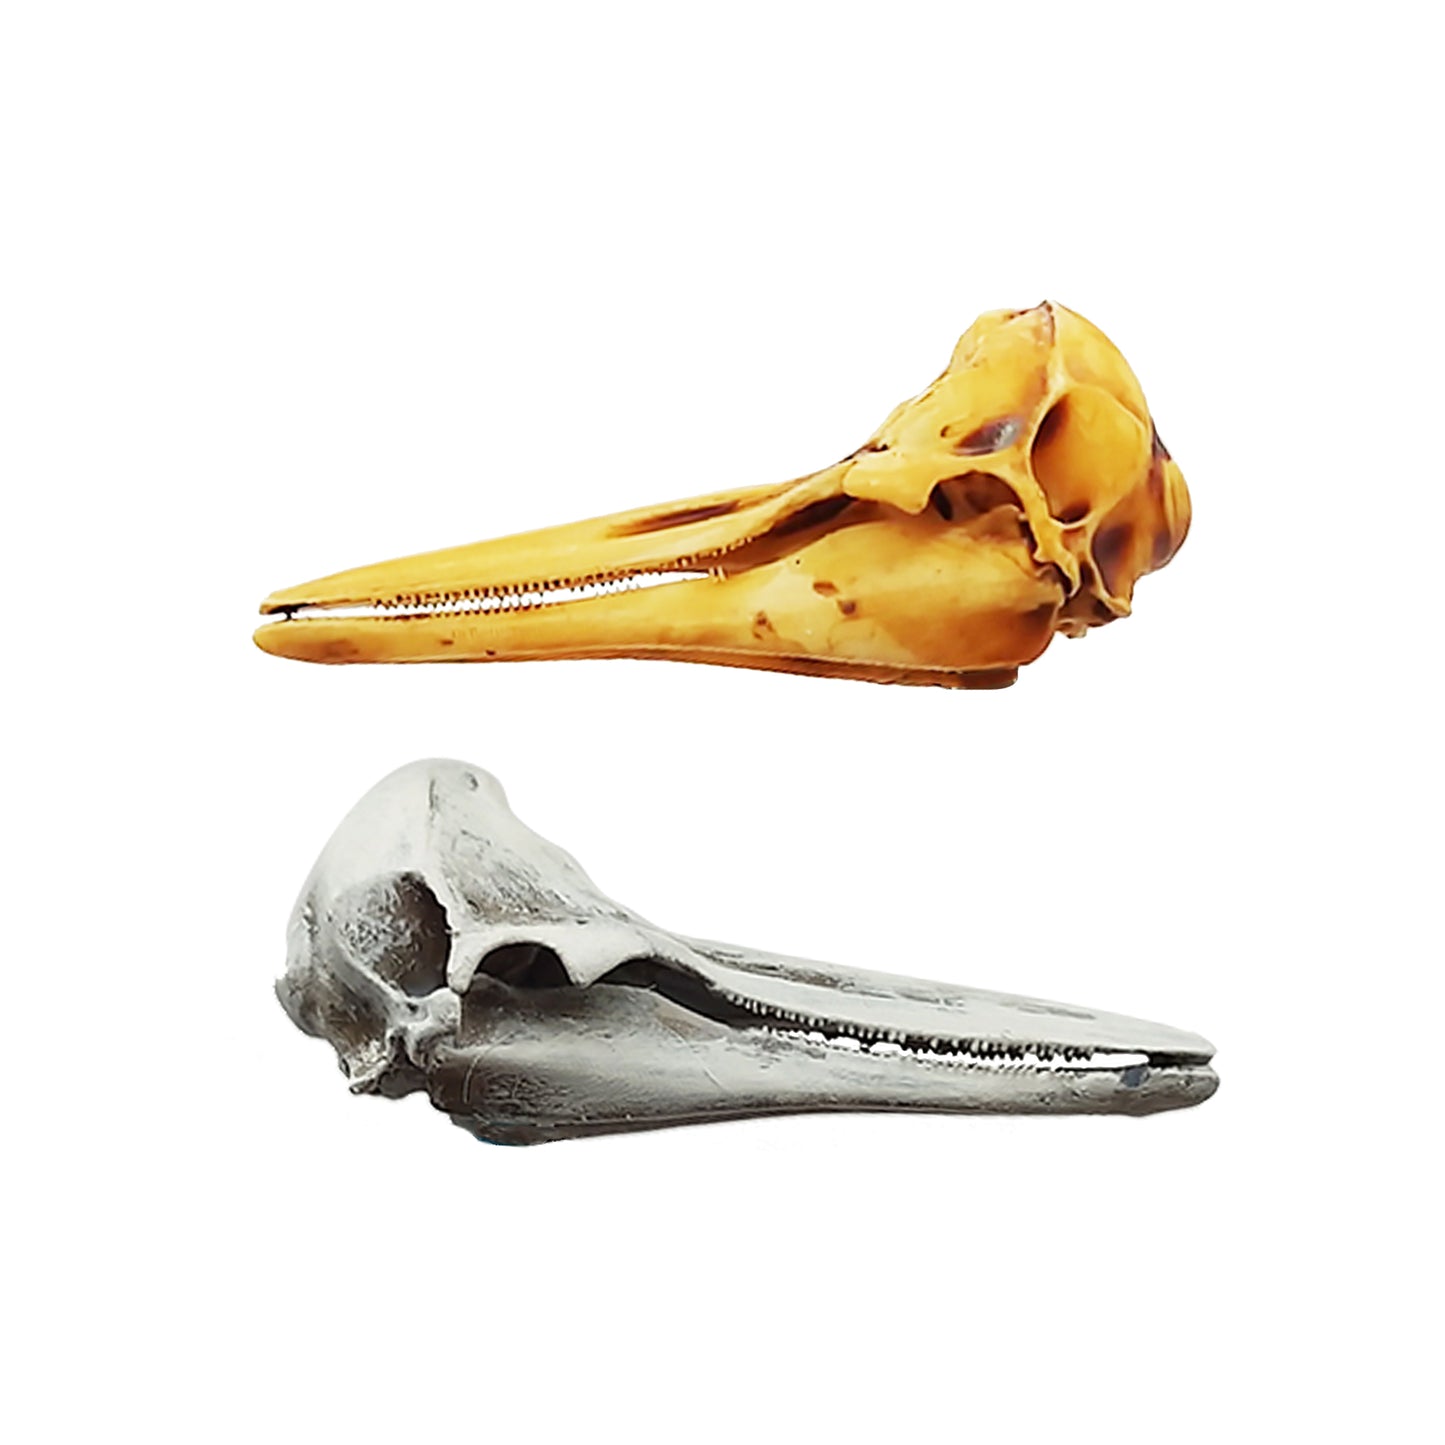 Right Whale Dolphin Replica Skull